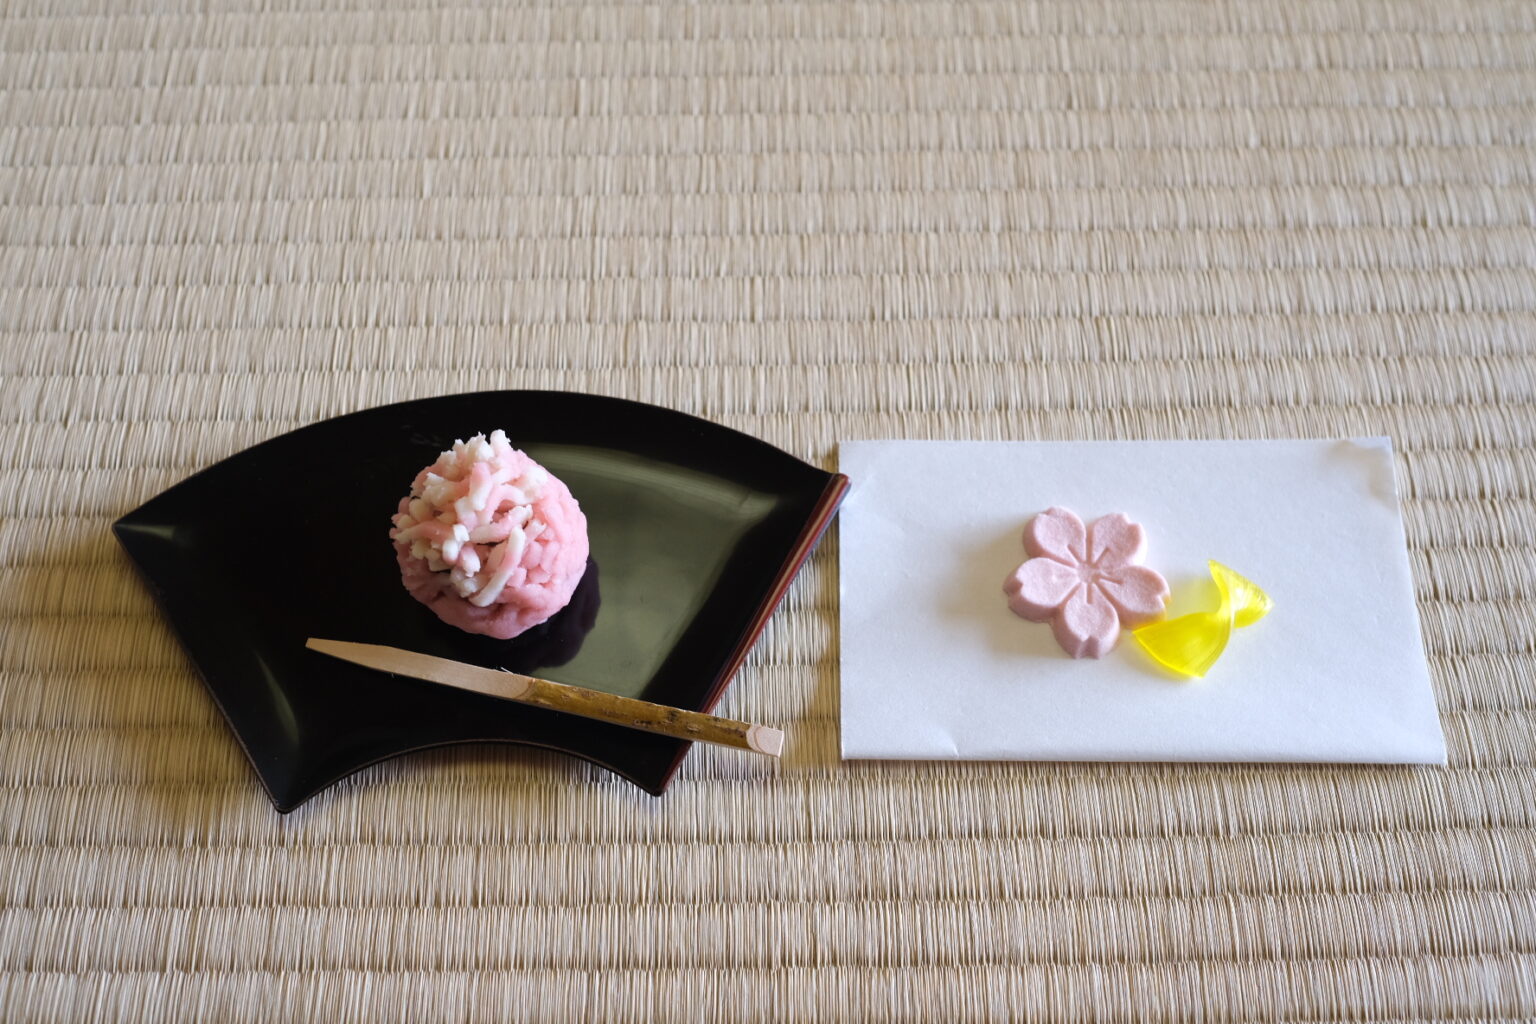 鶴屋八幡の生菓子と干菓子を用意。この日の生菓子は春らしい桜きんとん。